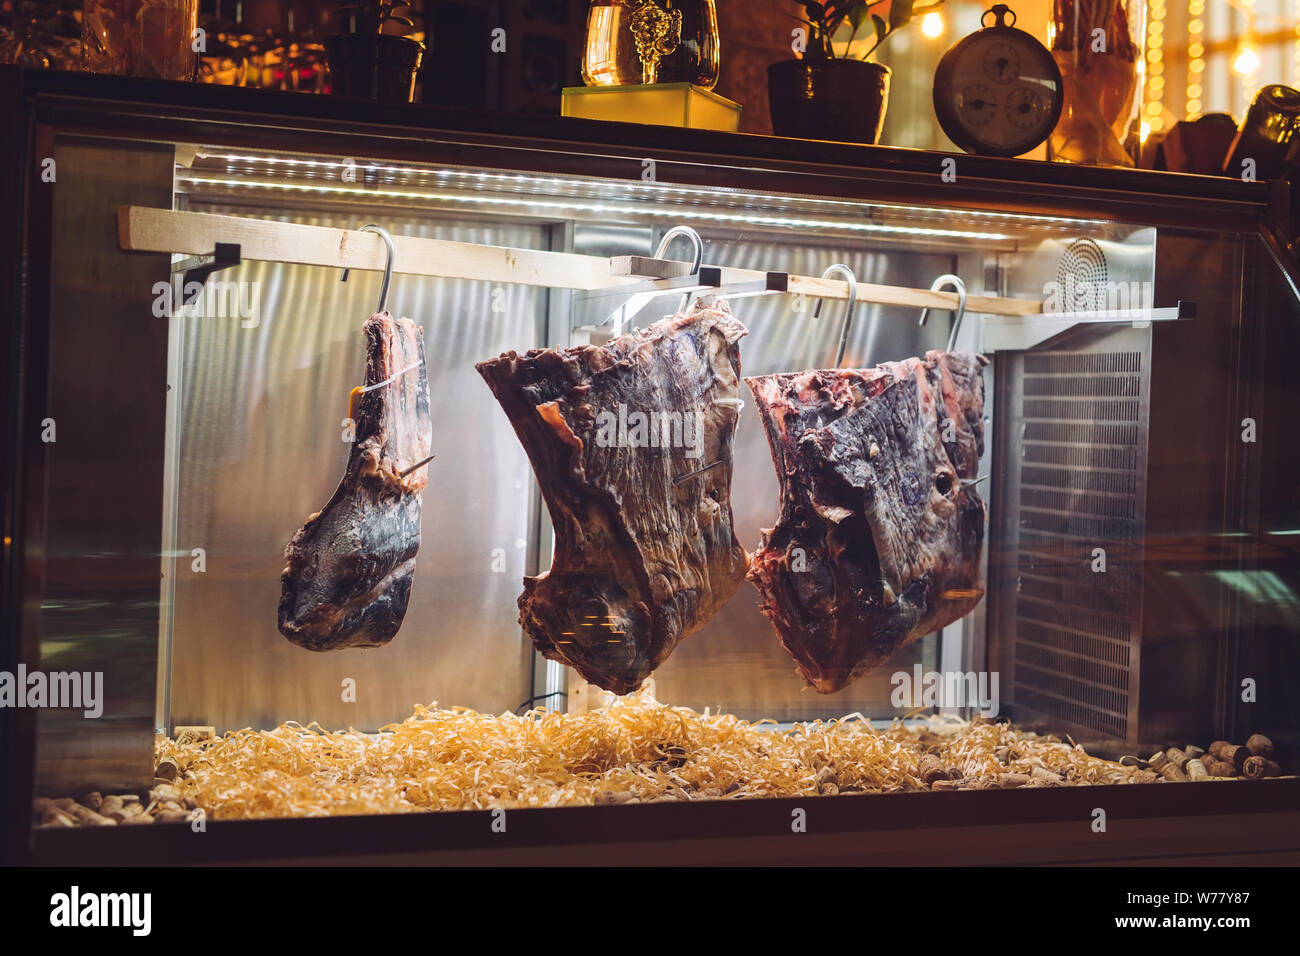 Getrocknetes Fleisch. Rindersteak in einem Trockenschrank Stockfotografie -  Alamy